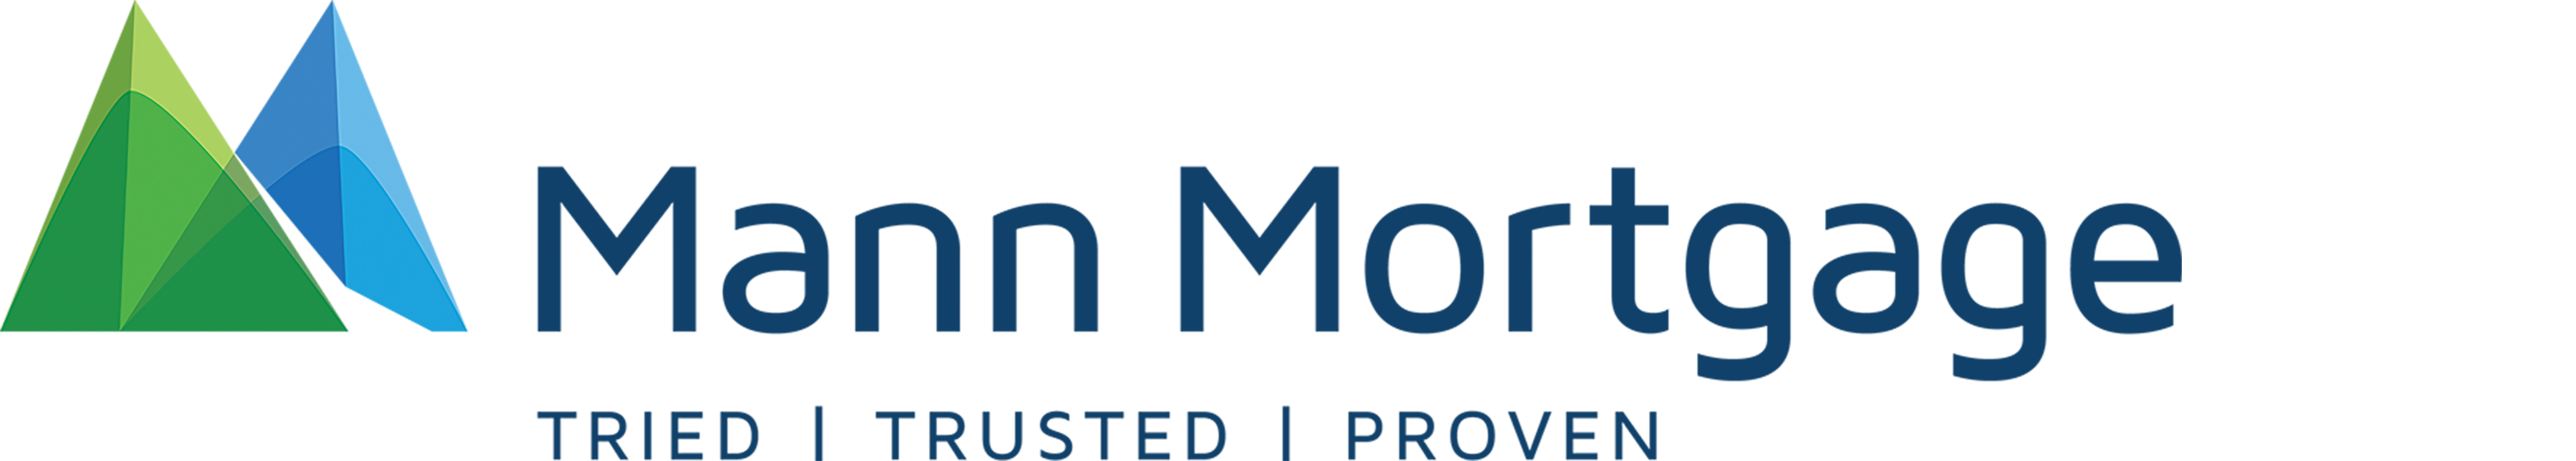 Mann Mortgage home loans logo